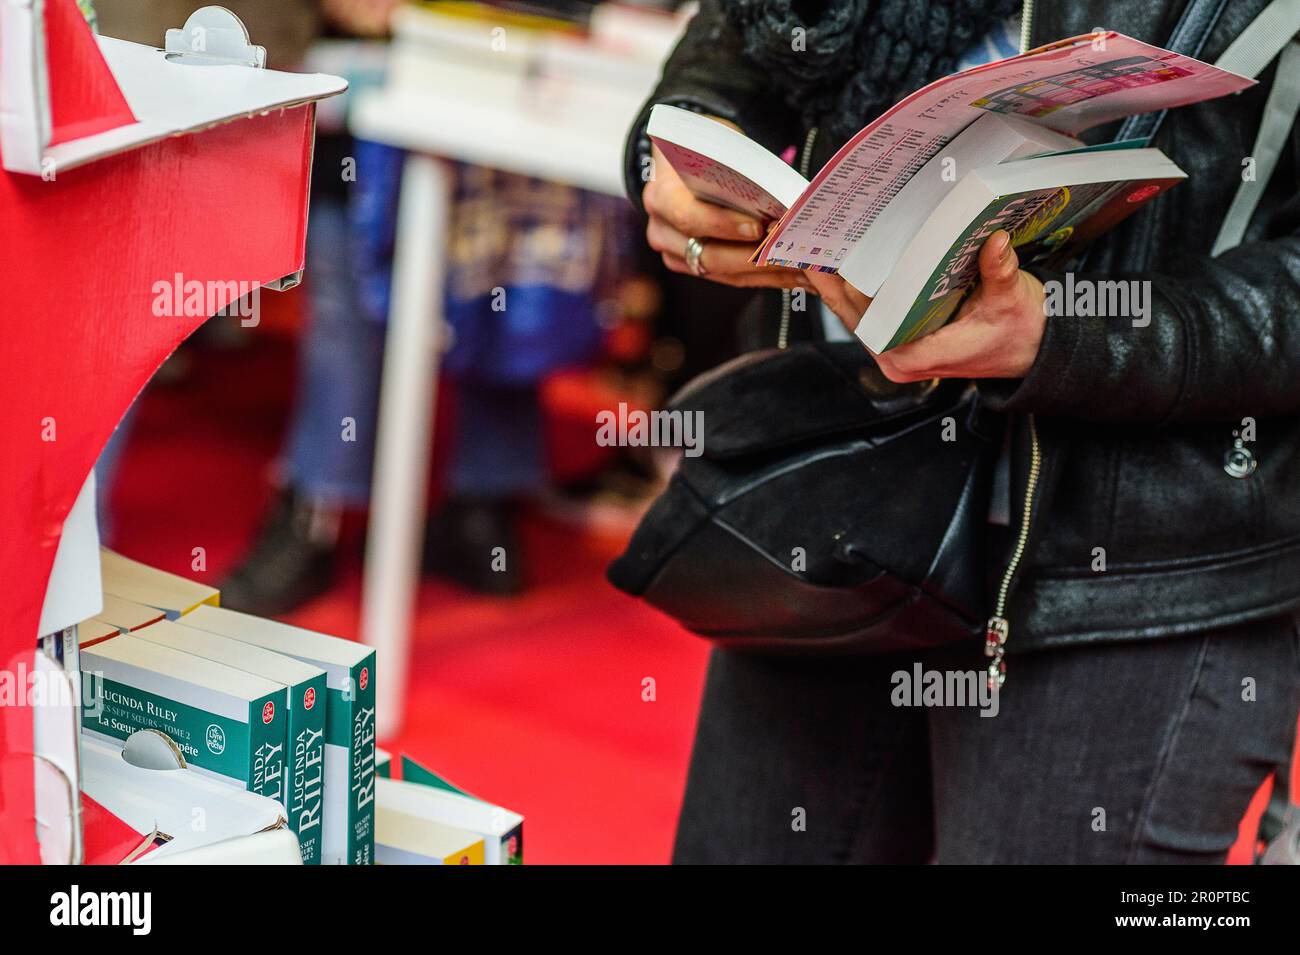 Foire du Livre de Bruxelles les gens se pressent autour des presentoirs 2023 Feuilleter un livre | Bruxelles Books fair 2023 - flipping the pages Foto Stock